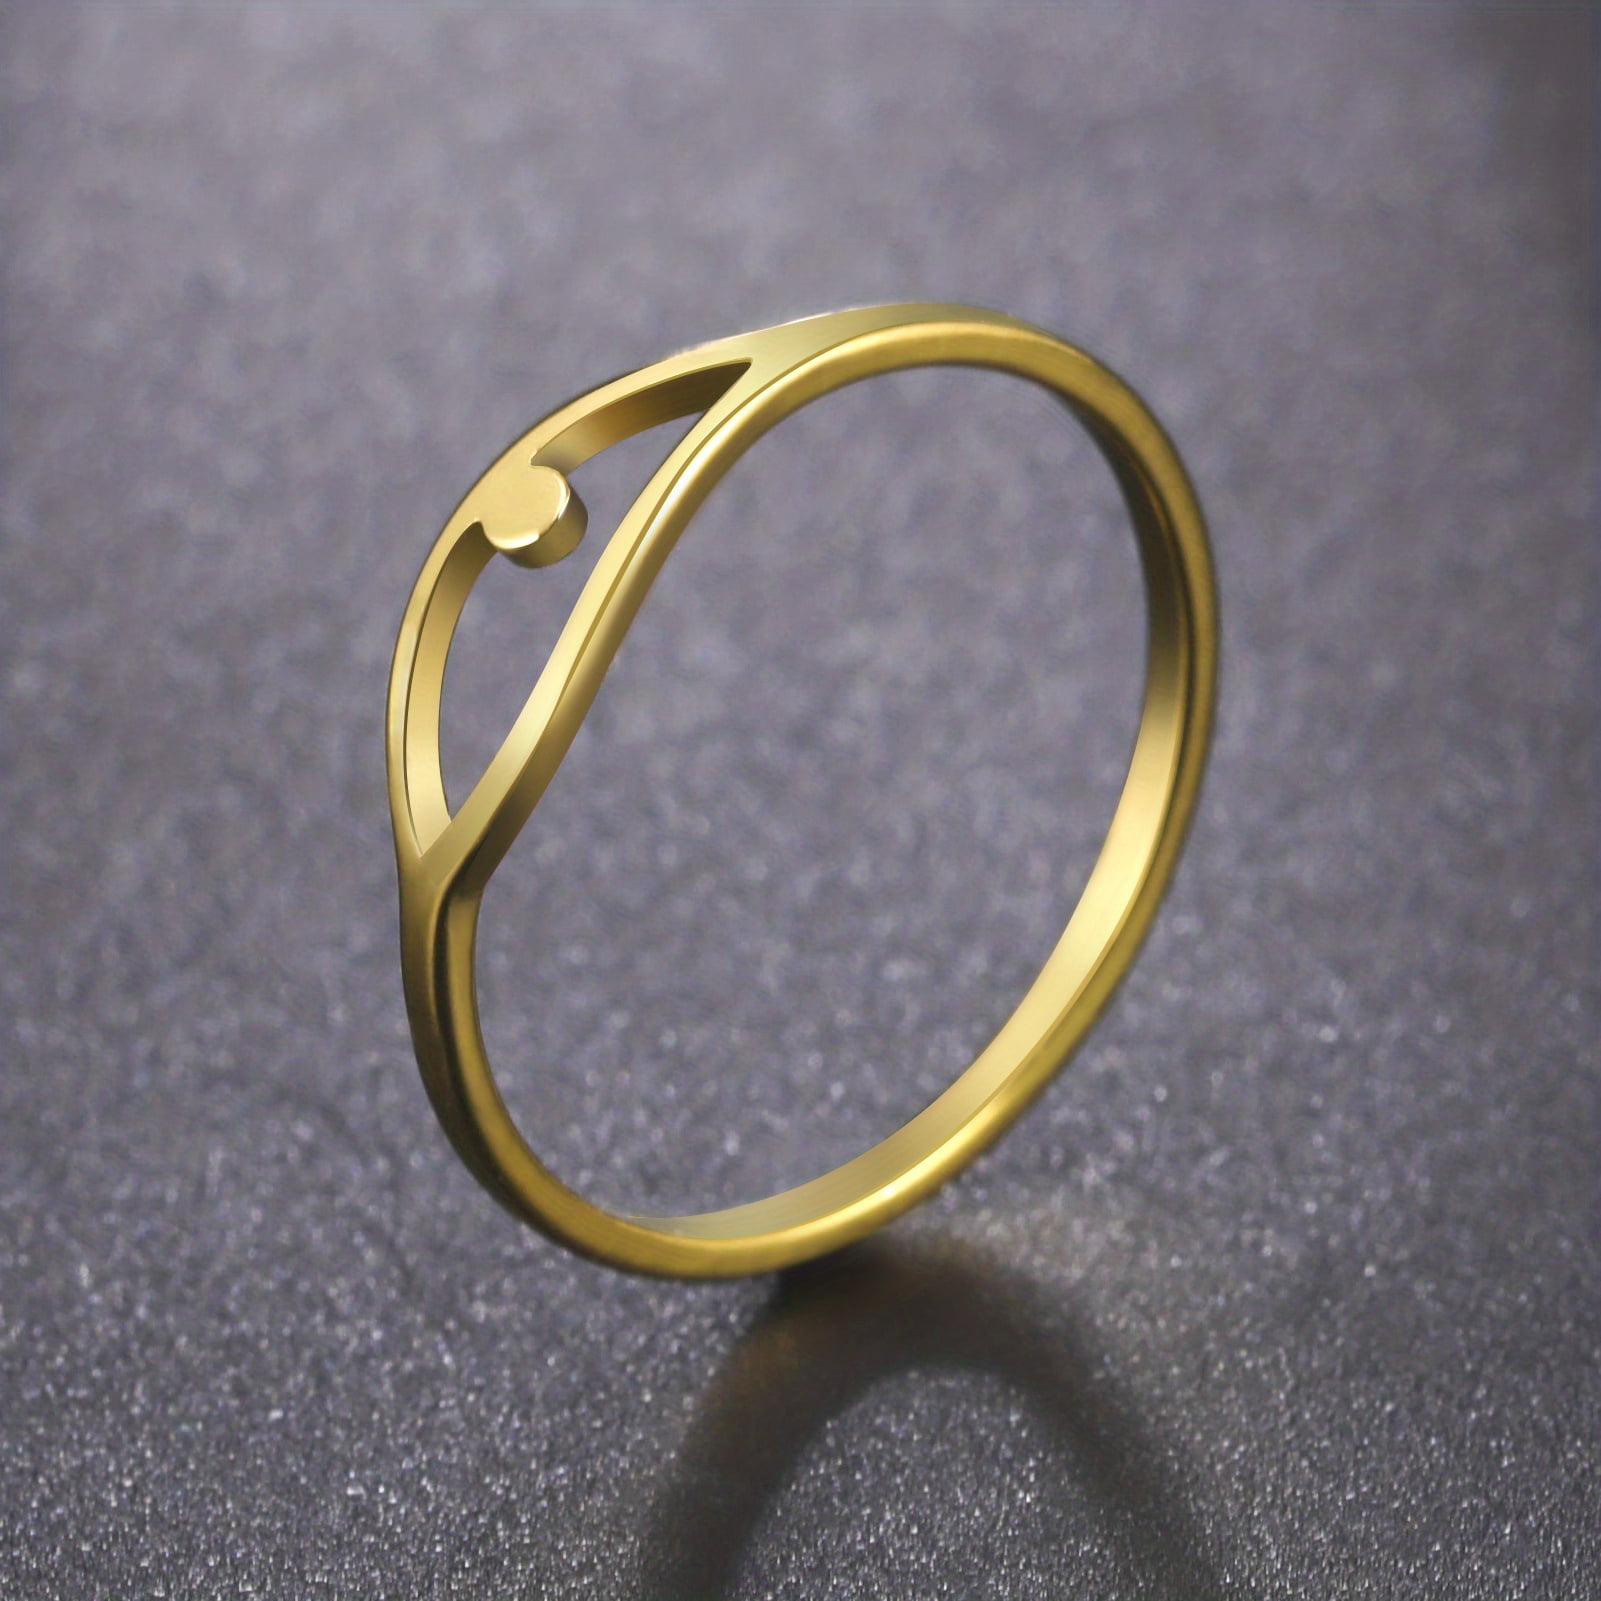 1pc Stylish Men's Eye Ring - Stainless Steel/Golden Color Finger Rings ...